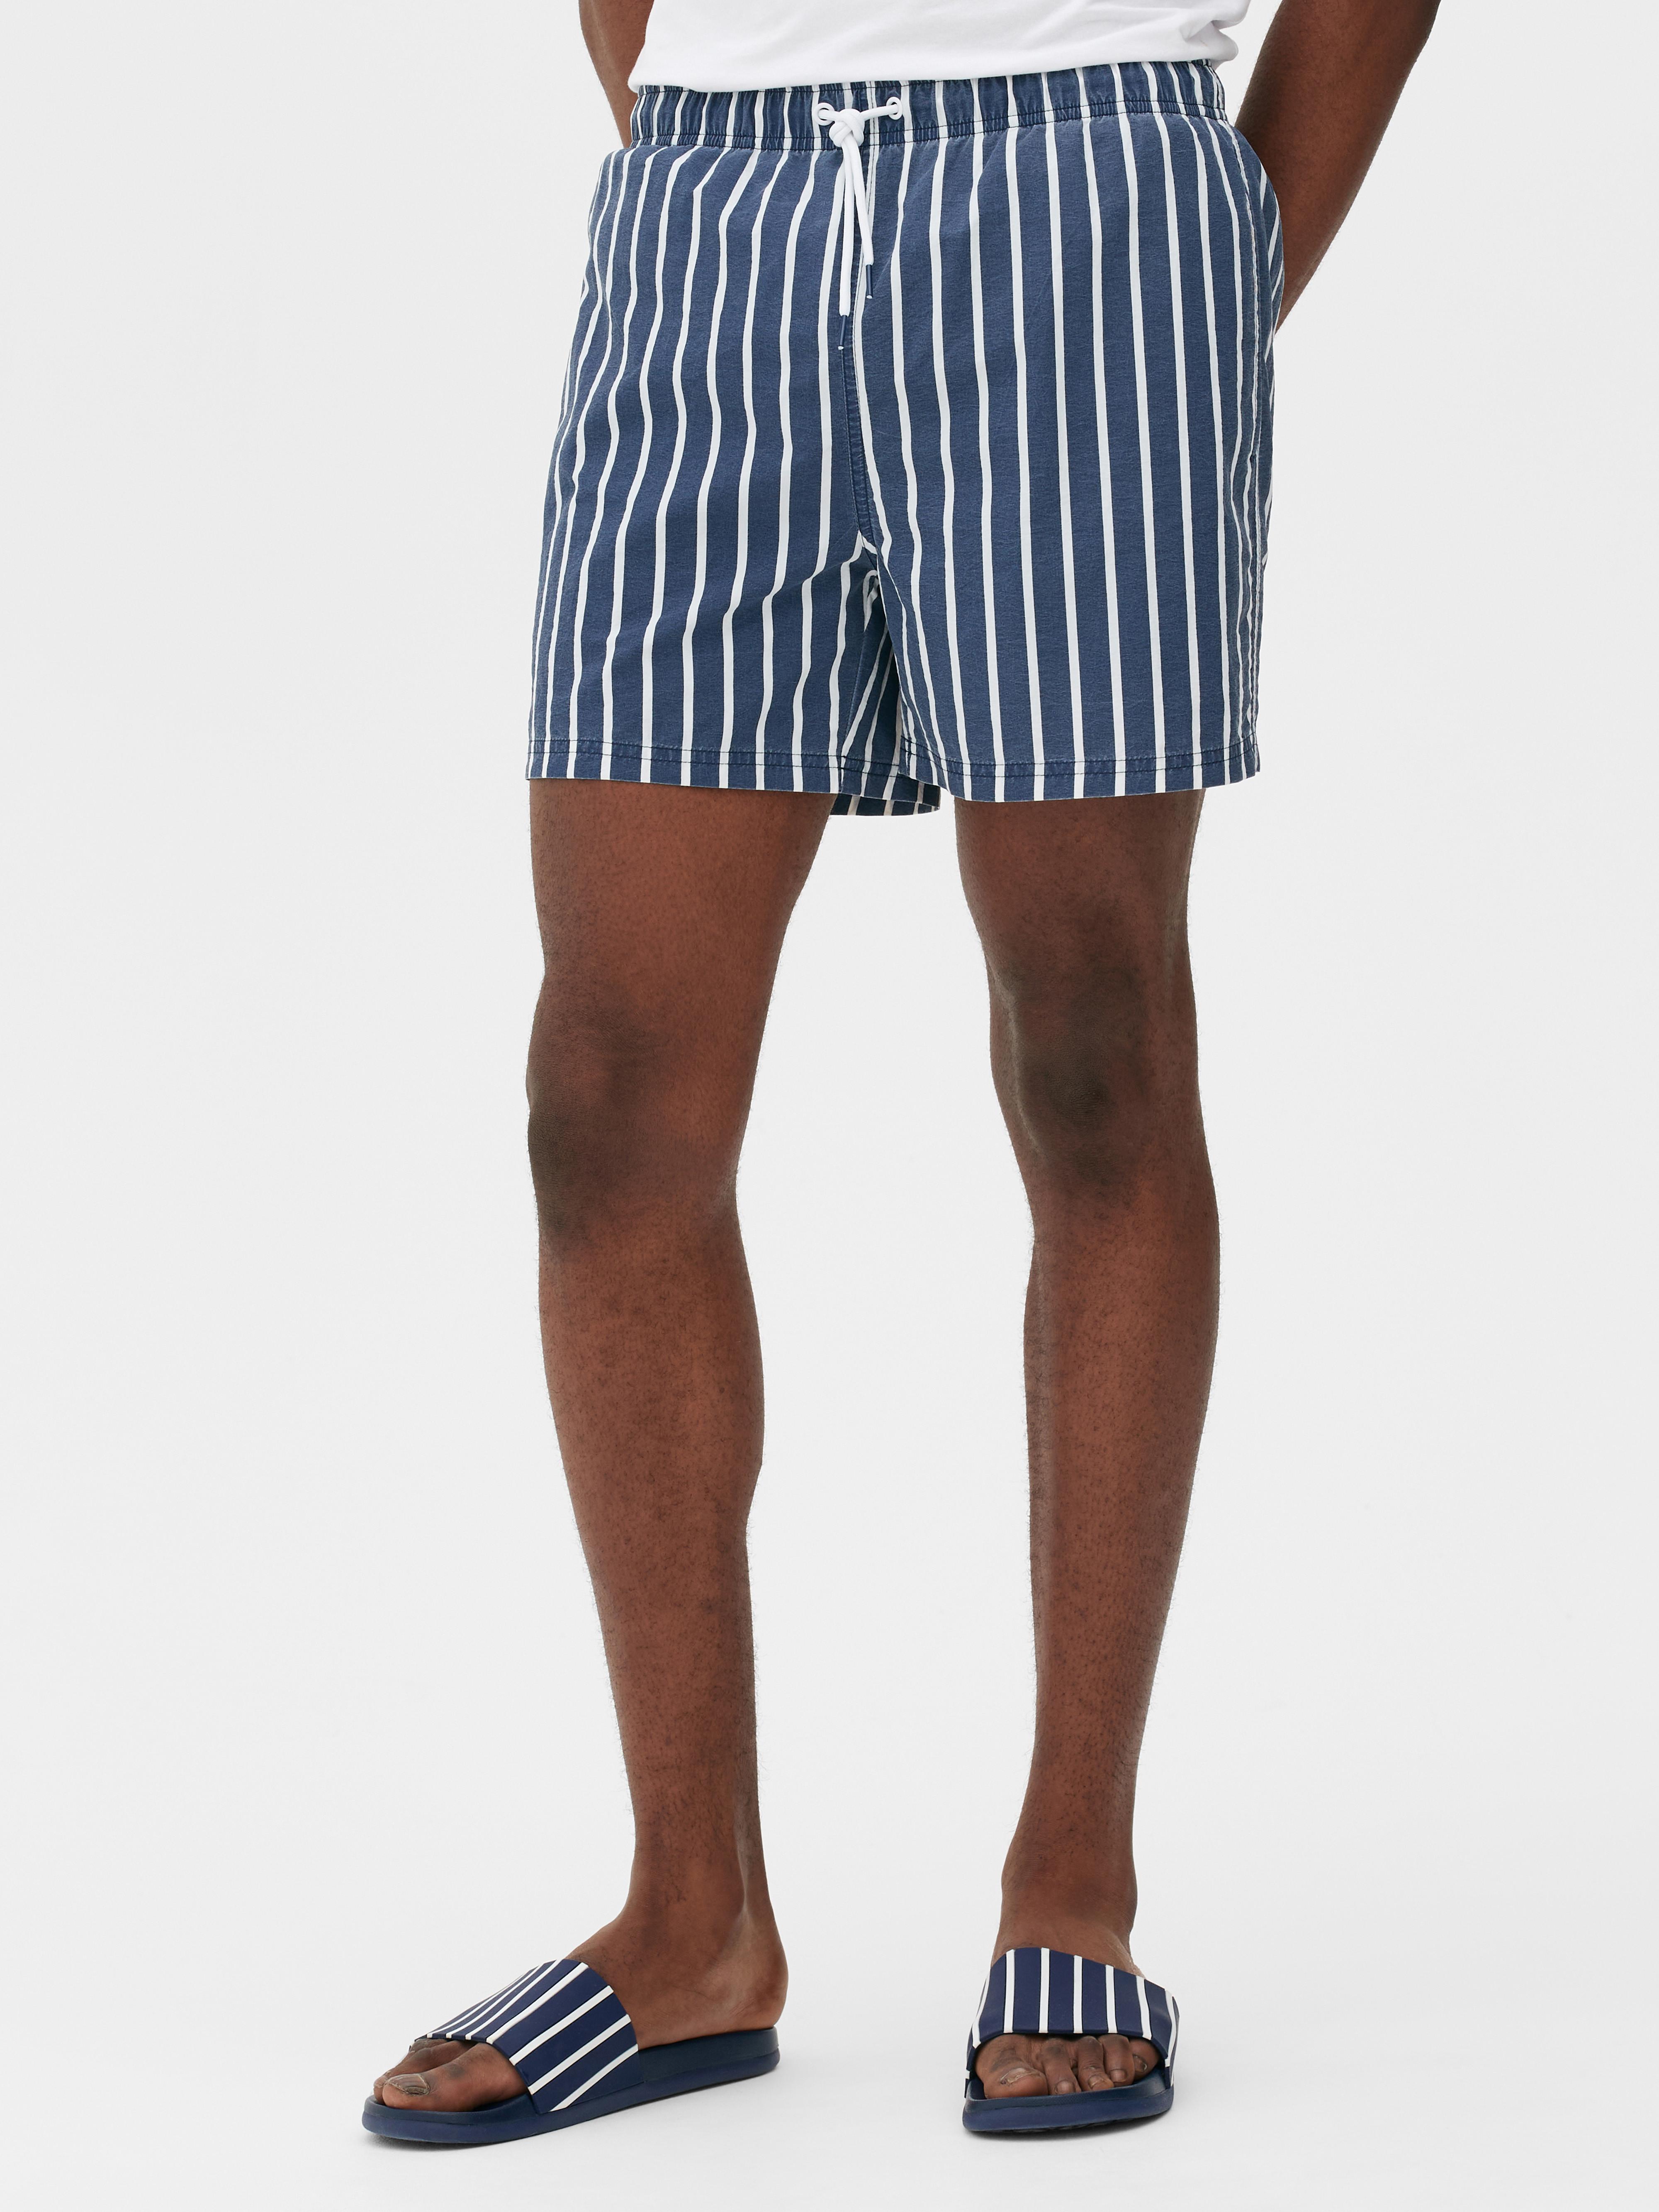 Washed striped swim shorts